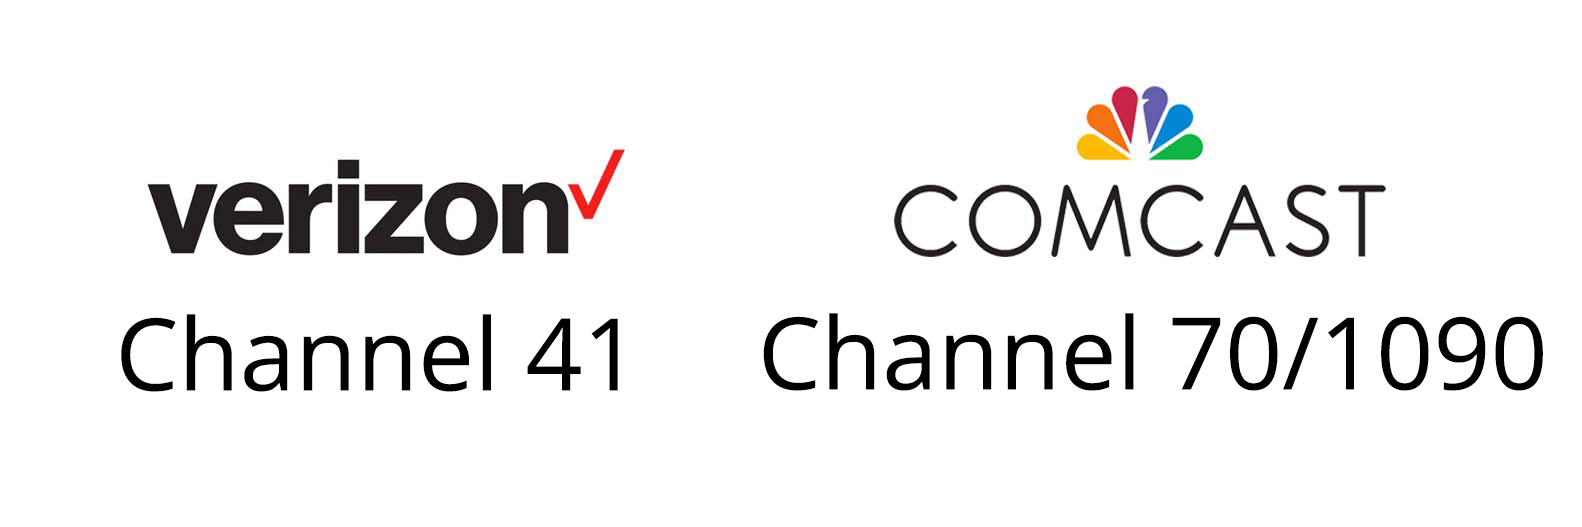 Verizon logo Channel 41; Comcast logo Channel 70/1090